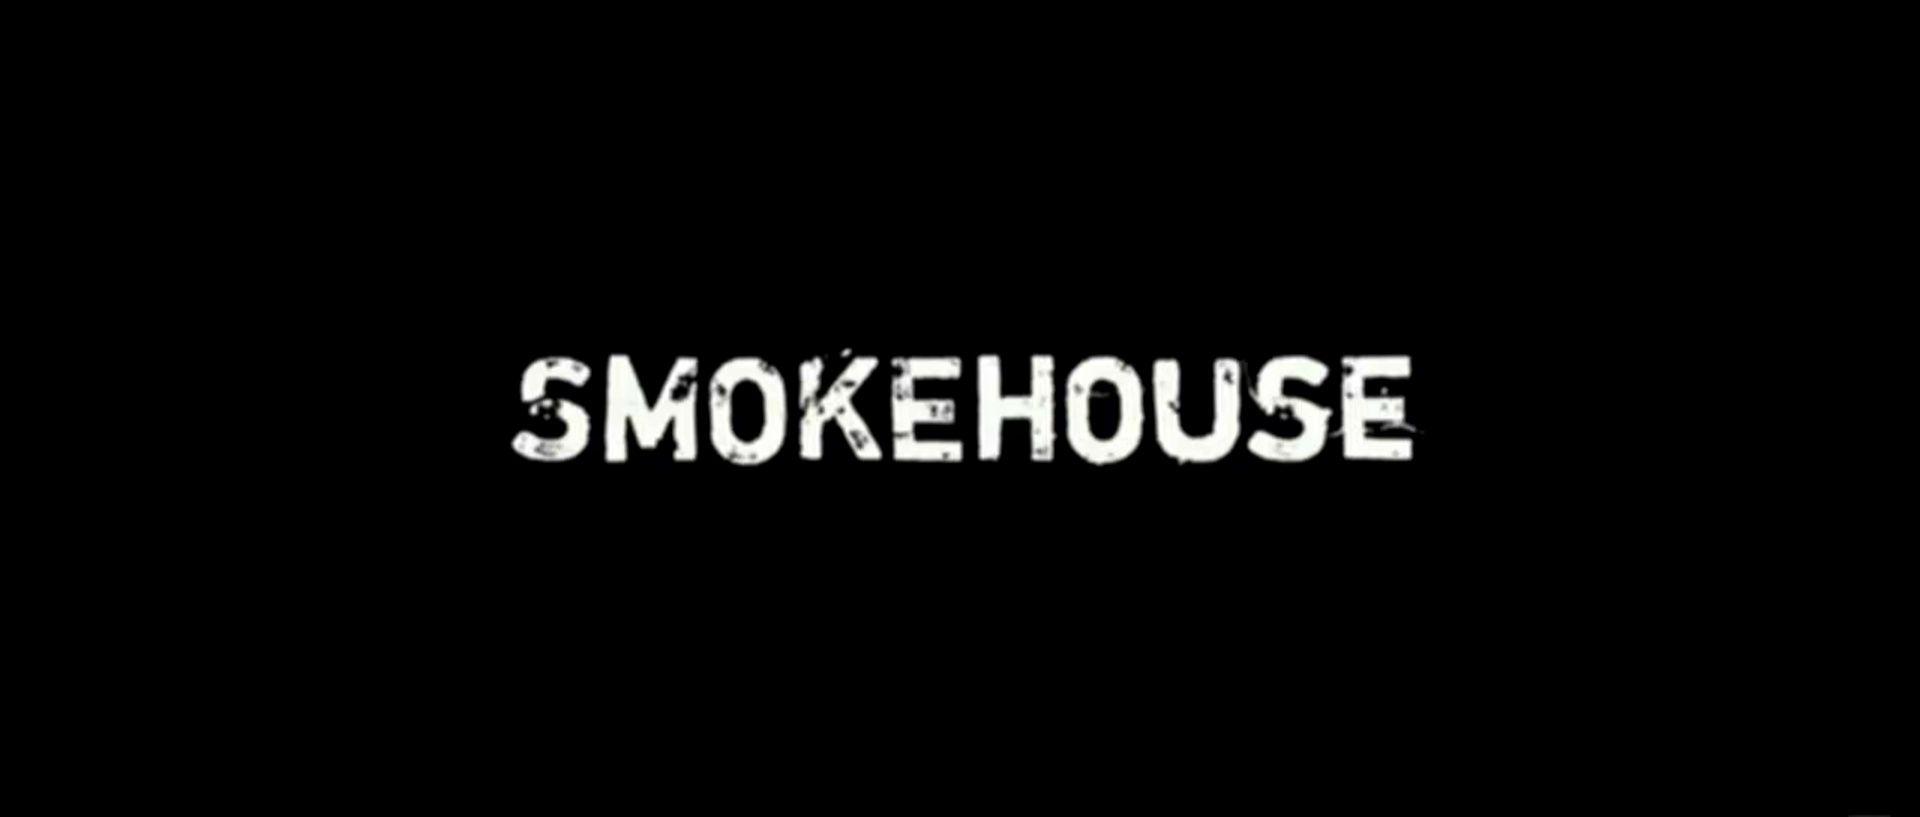 Smokehouse Logo - Smokehouse Pictures | Logopedia | FANDOM powered by Wikia